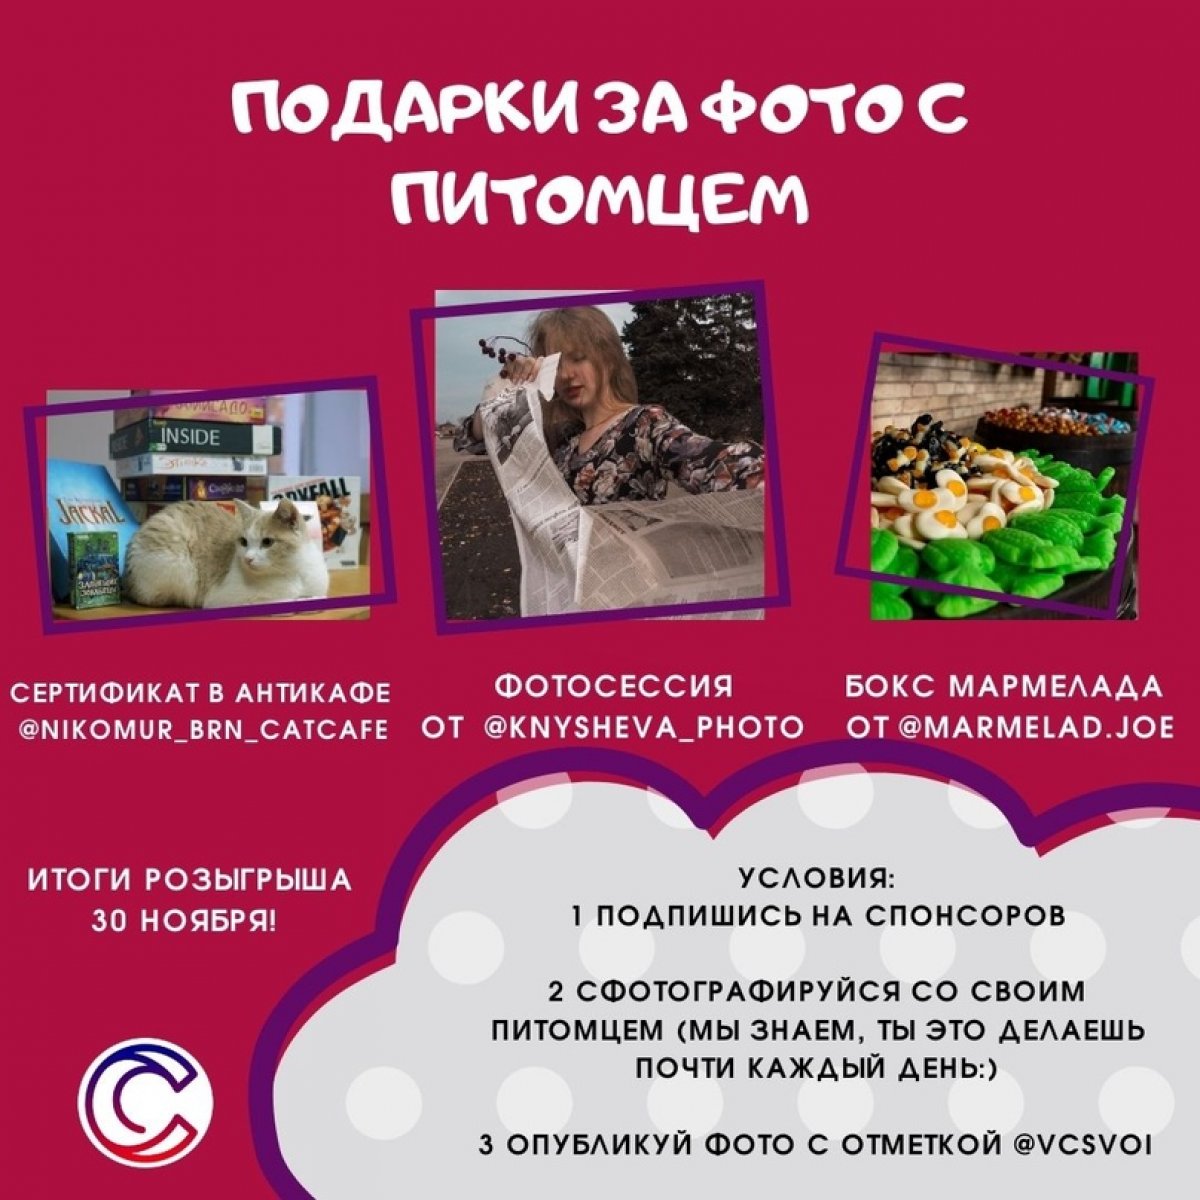 Фото с котиком сделал — призы от ВЦ «СВОЙ» получил 😎